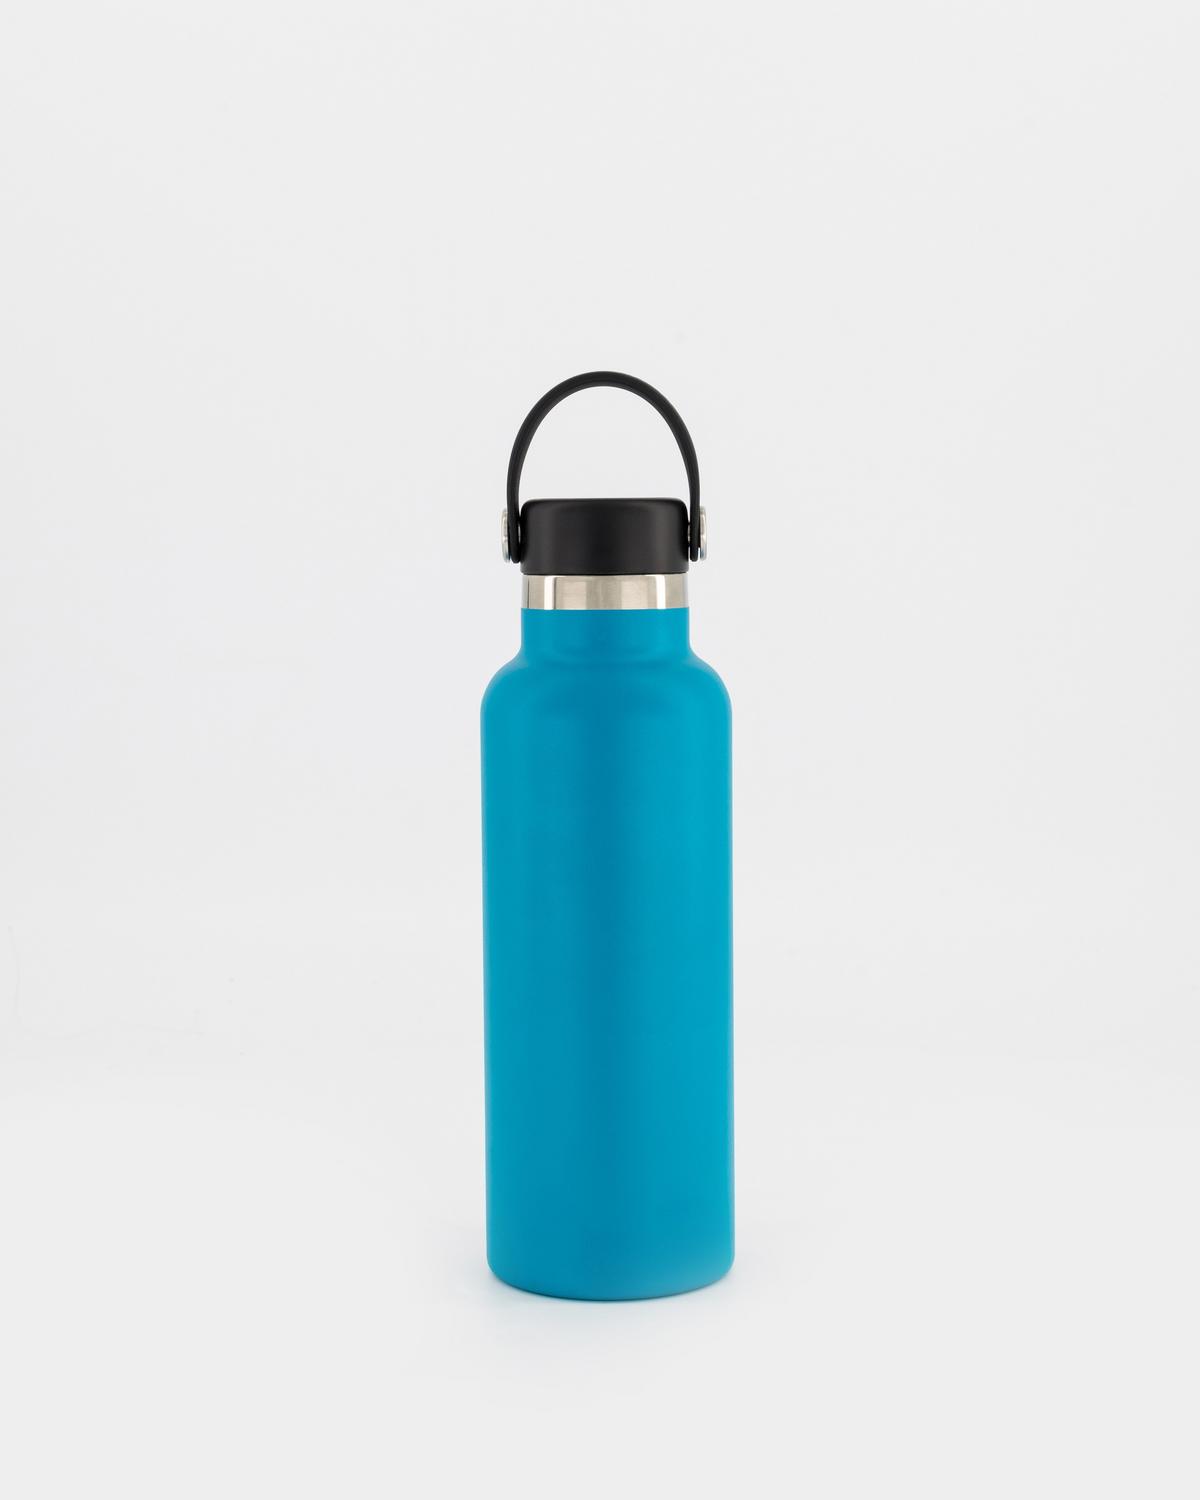 Hydro Flask 532ml Standard Mouth Bottle -  Blue